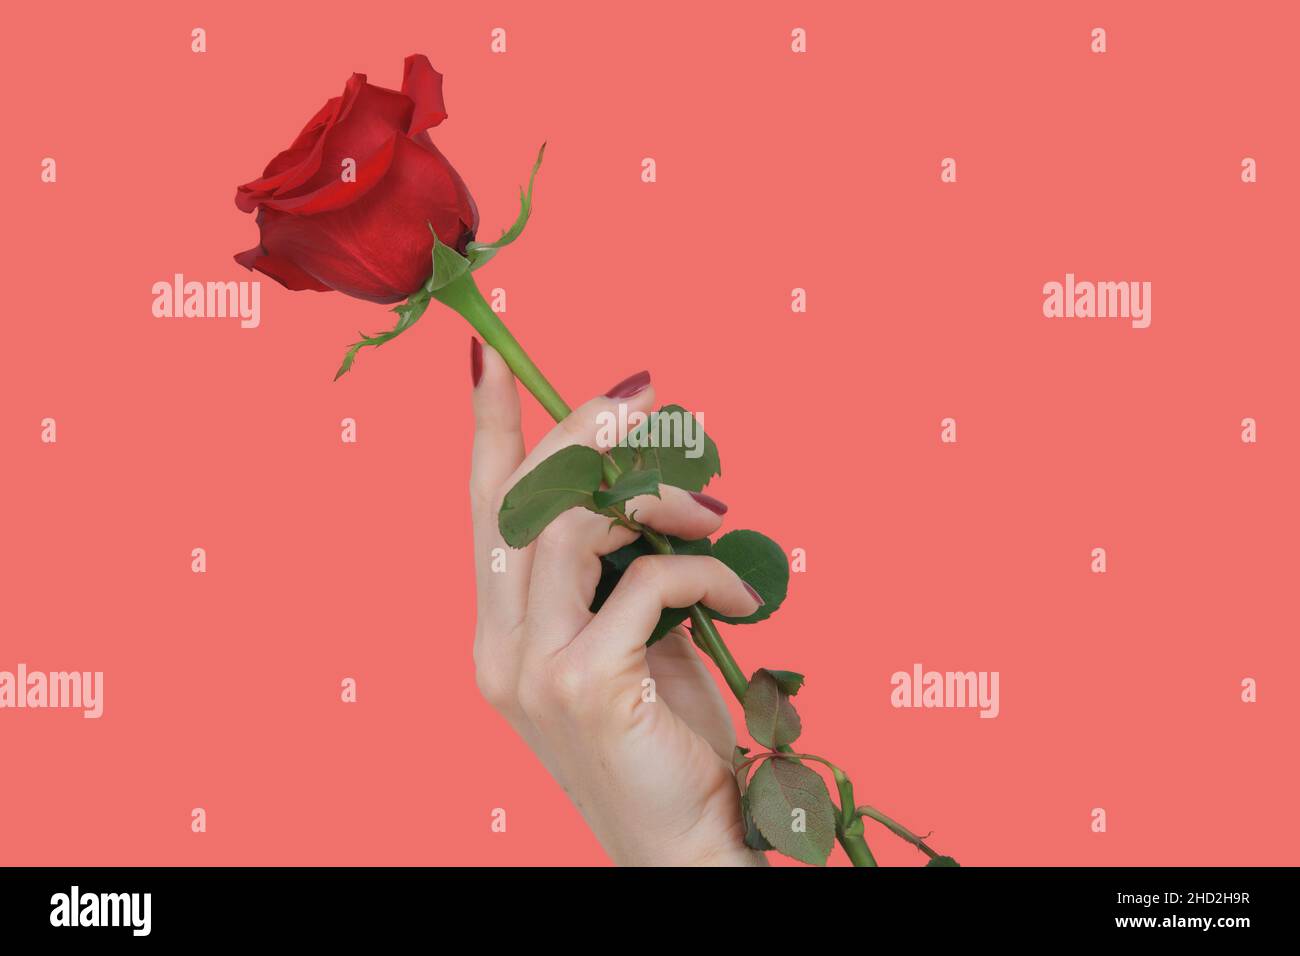 Une main avec de beaux ongles rouges tenant une rose rouge sur un fond rose Banque D'Images